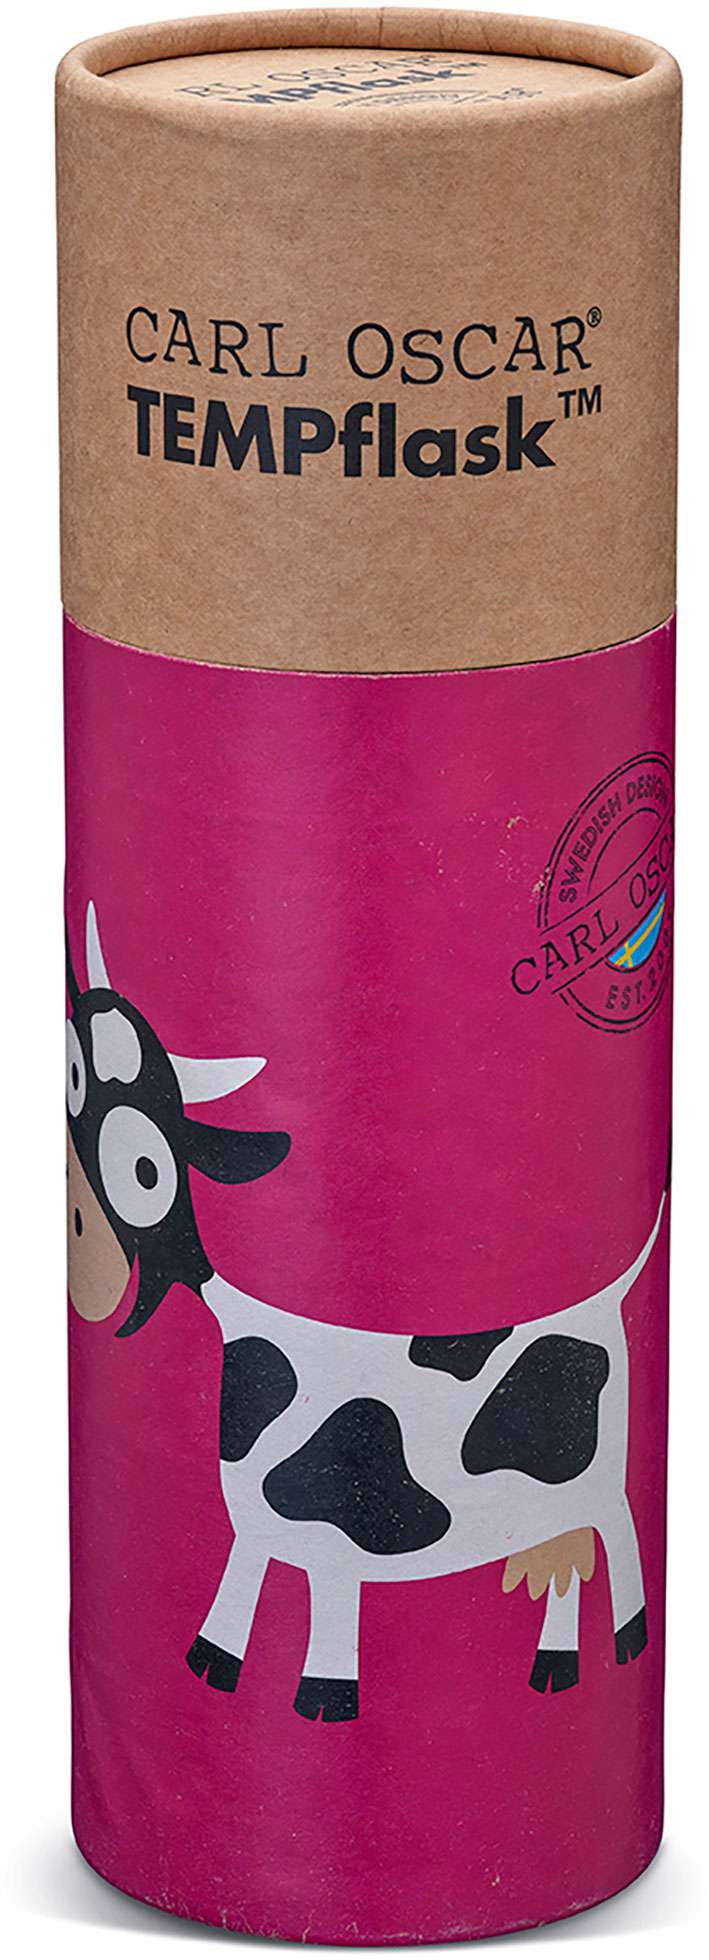 TEMPflask™ 350ml Thermal Bottle Cow Purple - Carl Oscar